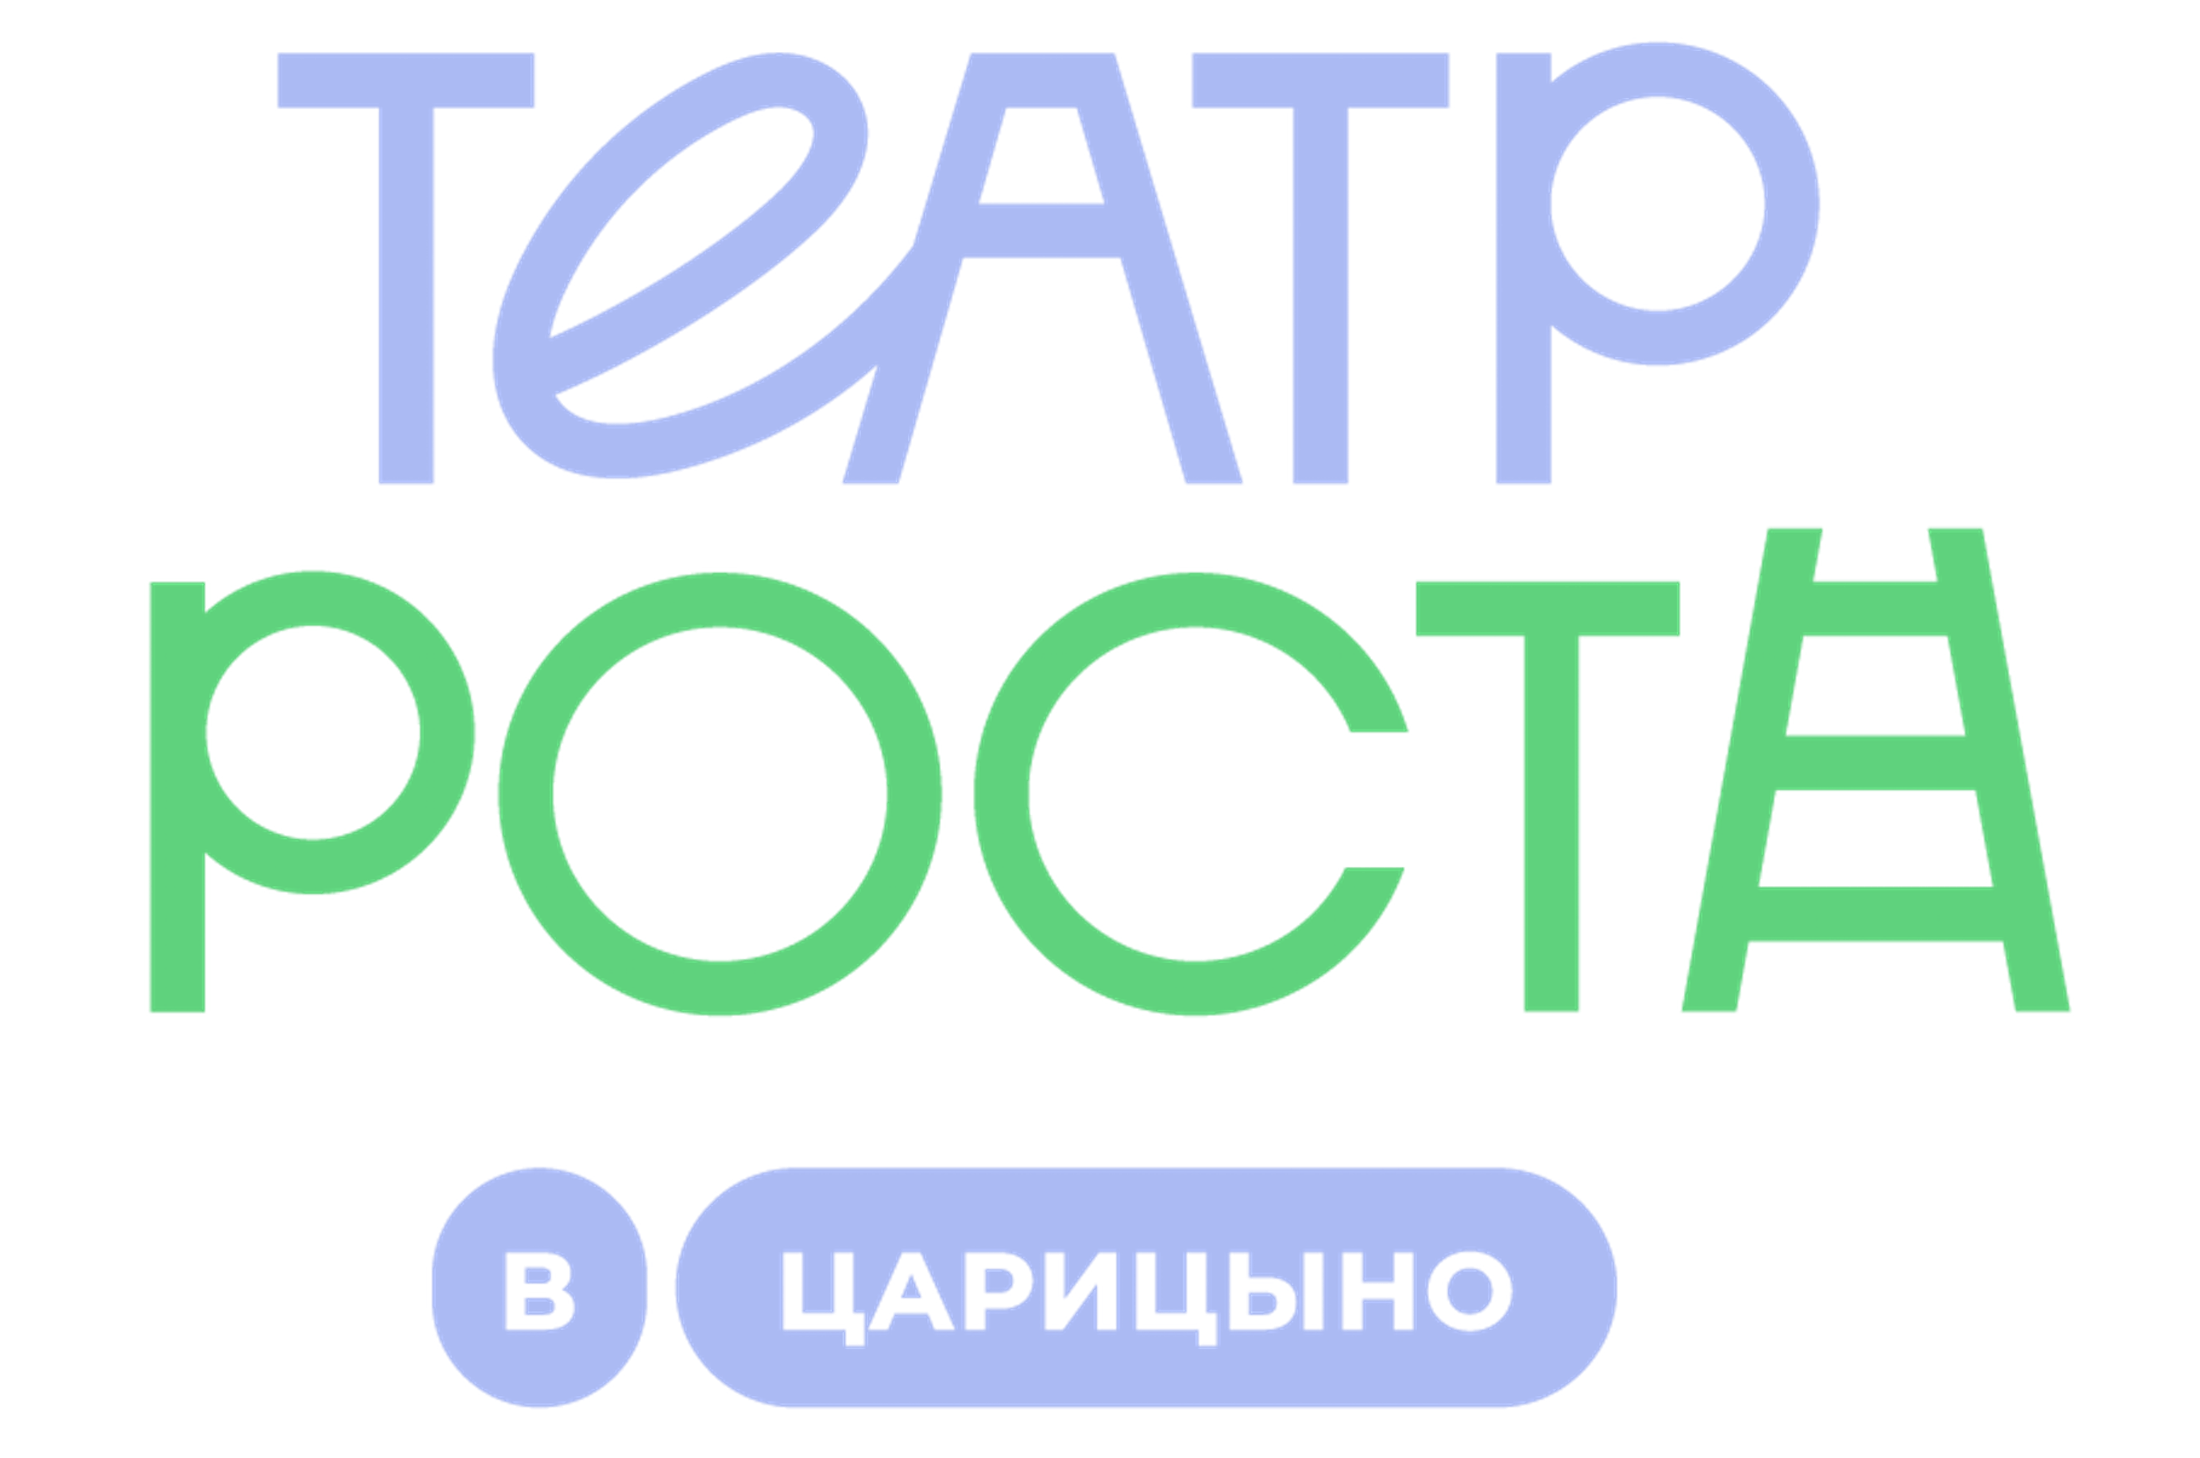 Московский Театр РОСТА в Царицыно